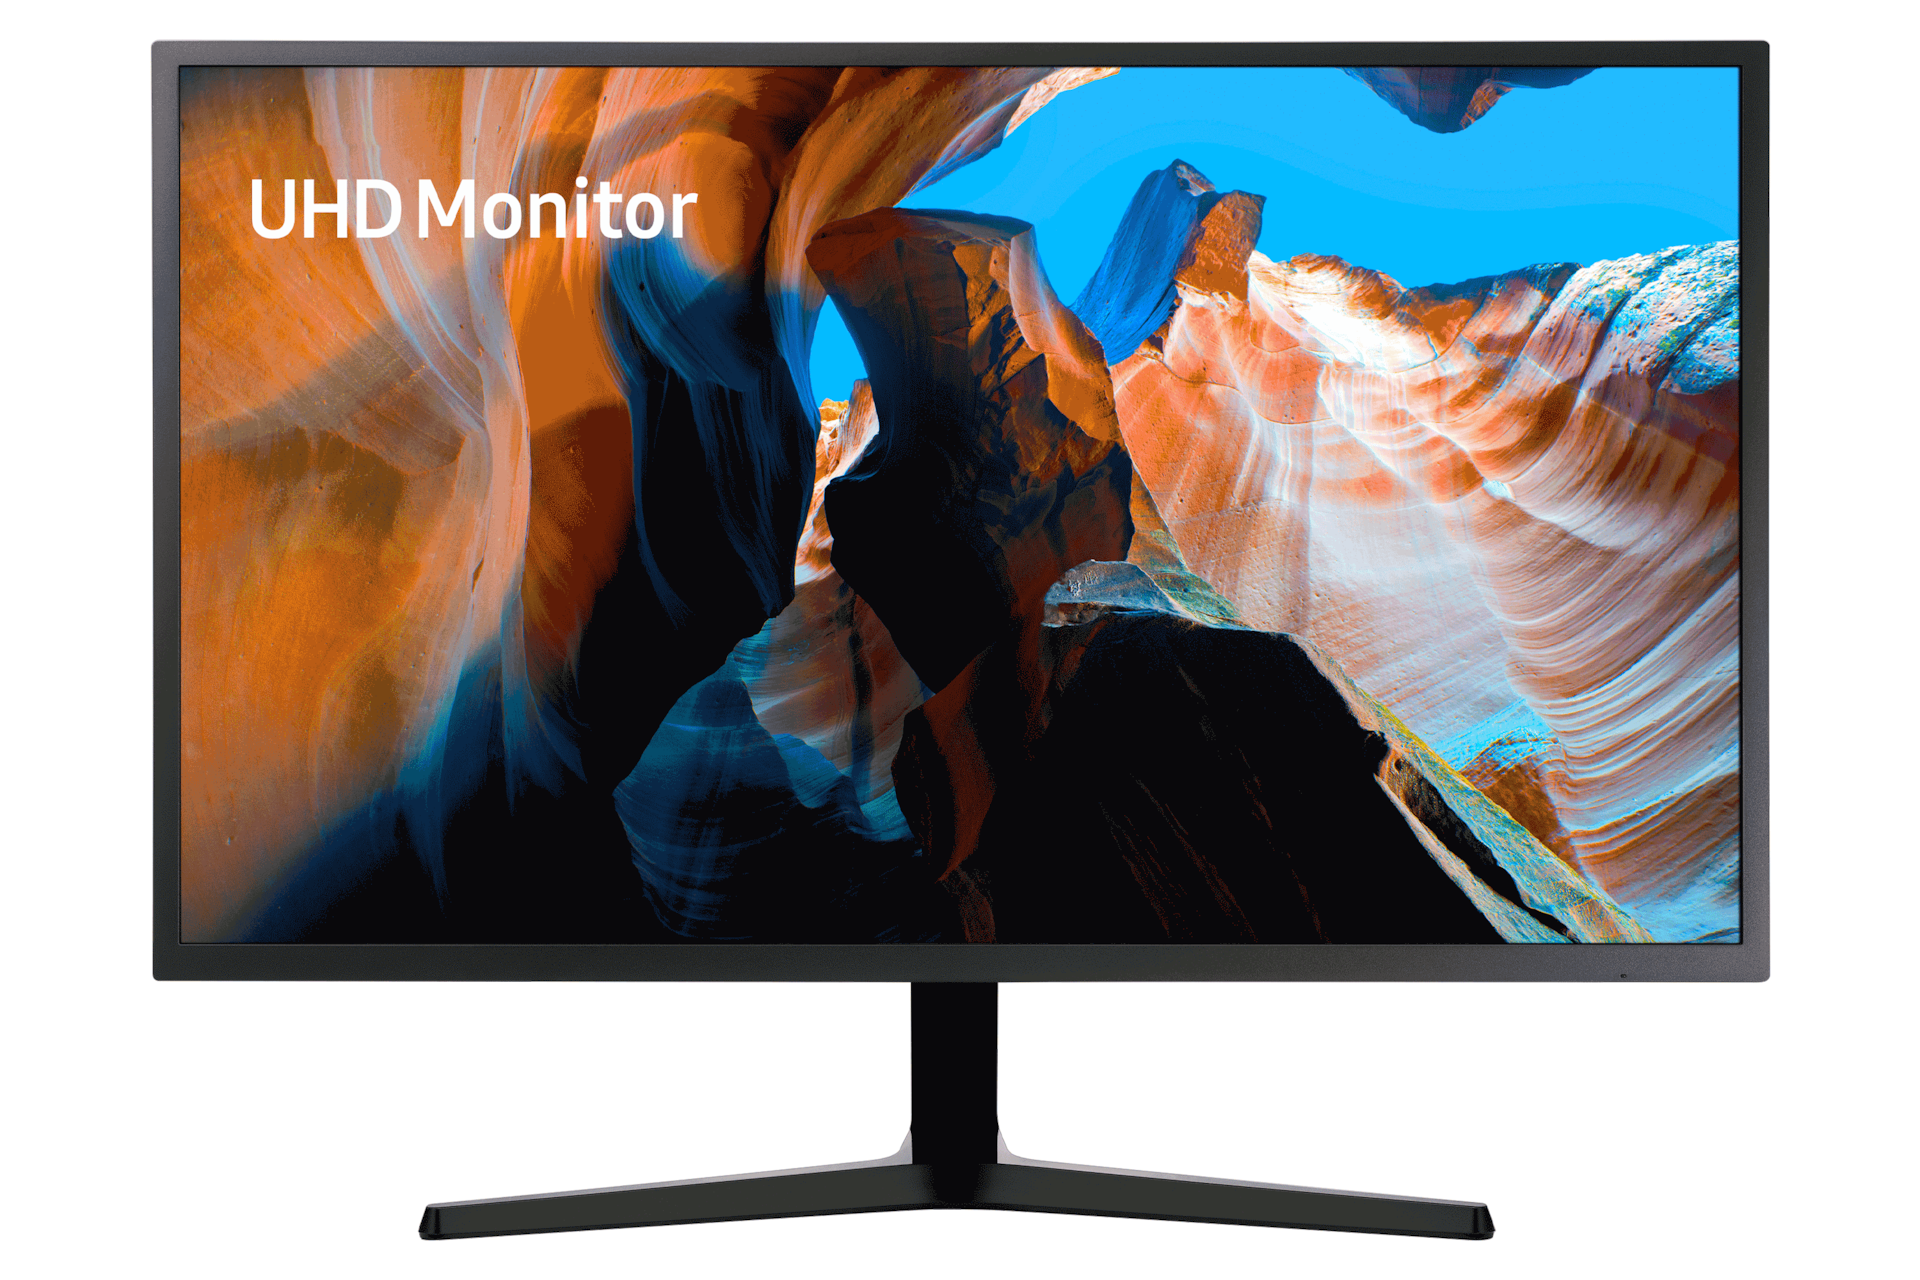 Monitor 32 UHD 4K con AMD color Negro